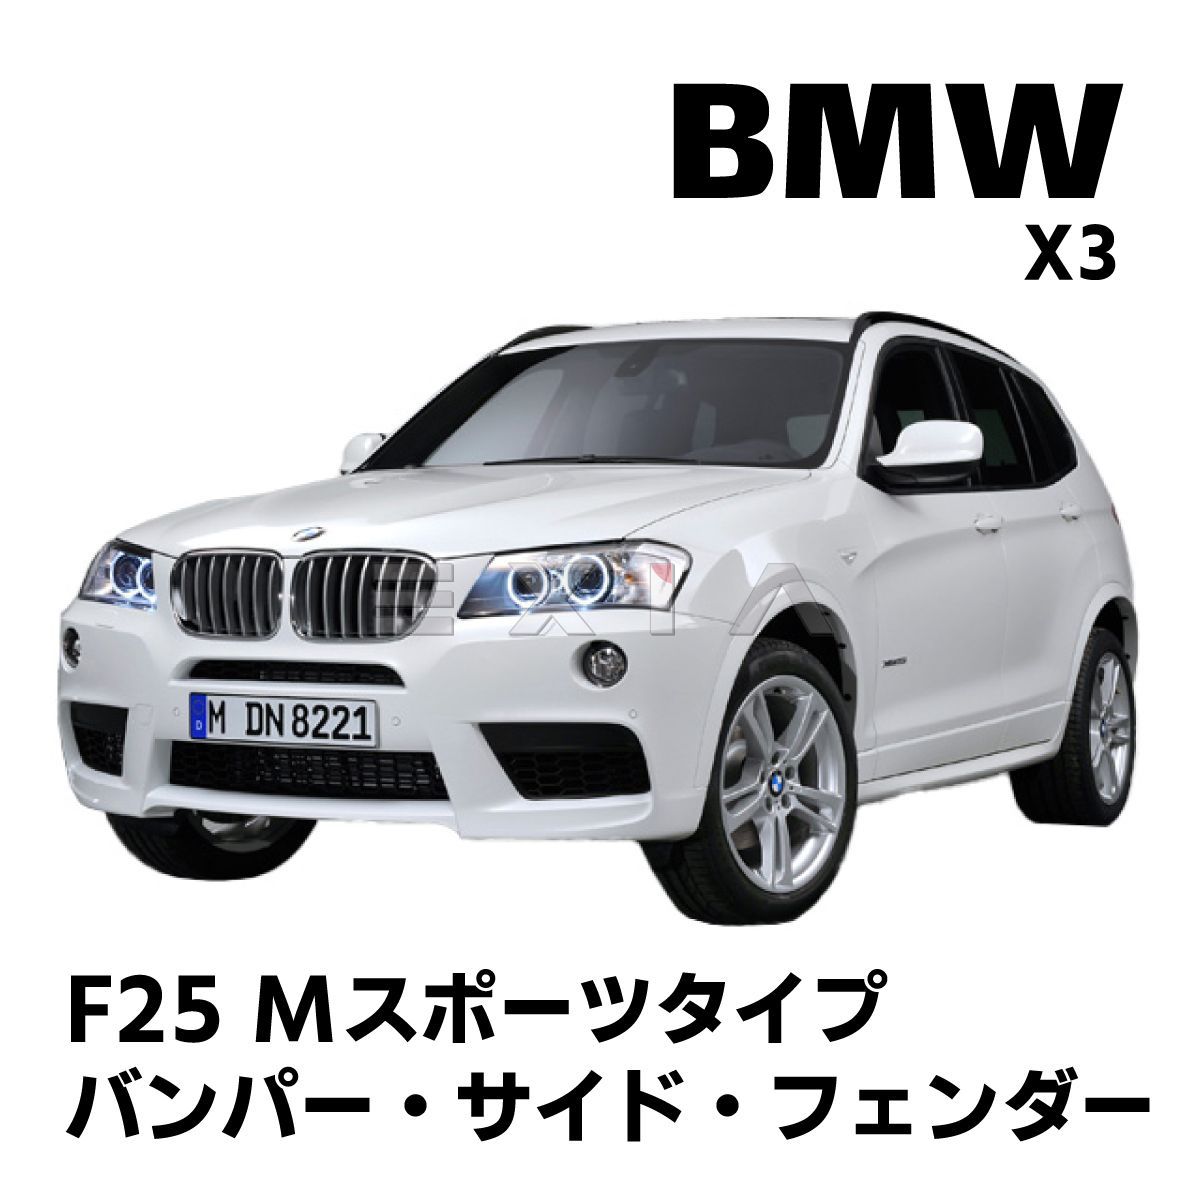 BMW X3 F25 Mスポーツタイプ フロントバンパー グリル サイド